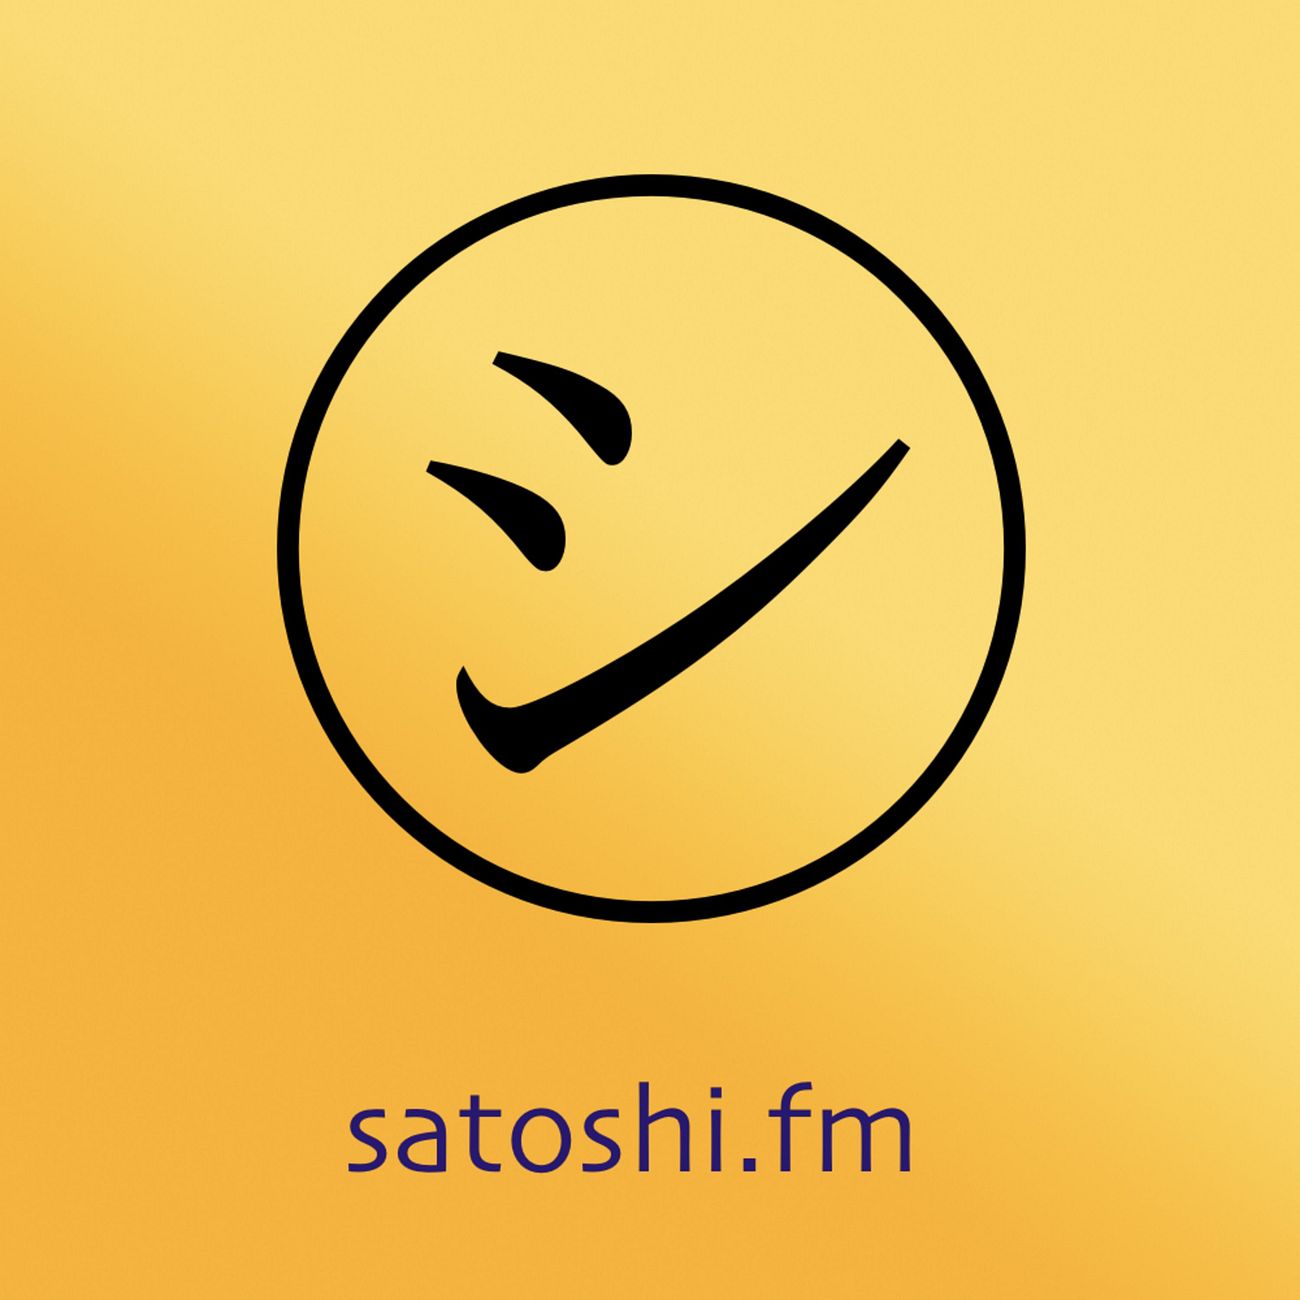 Satoshi.fm